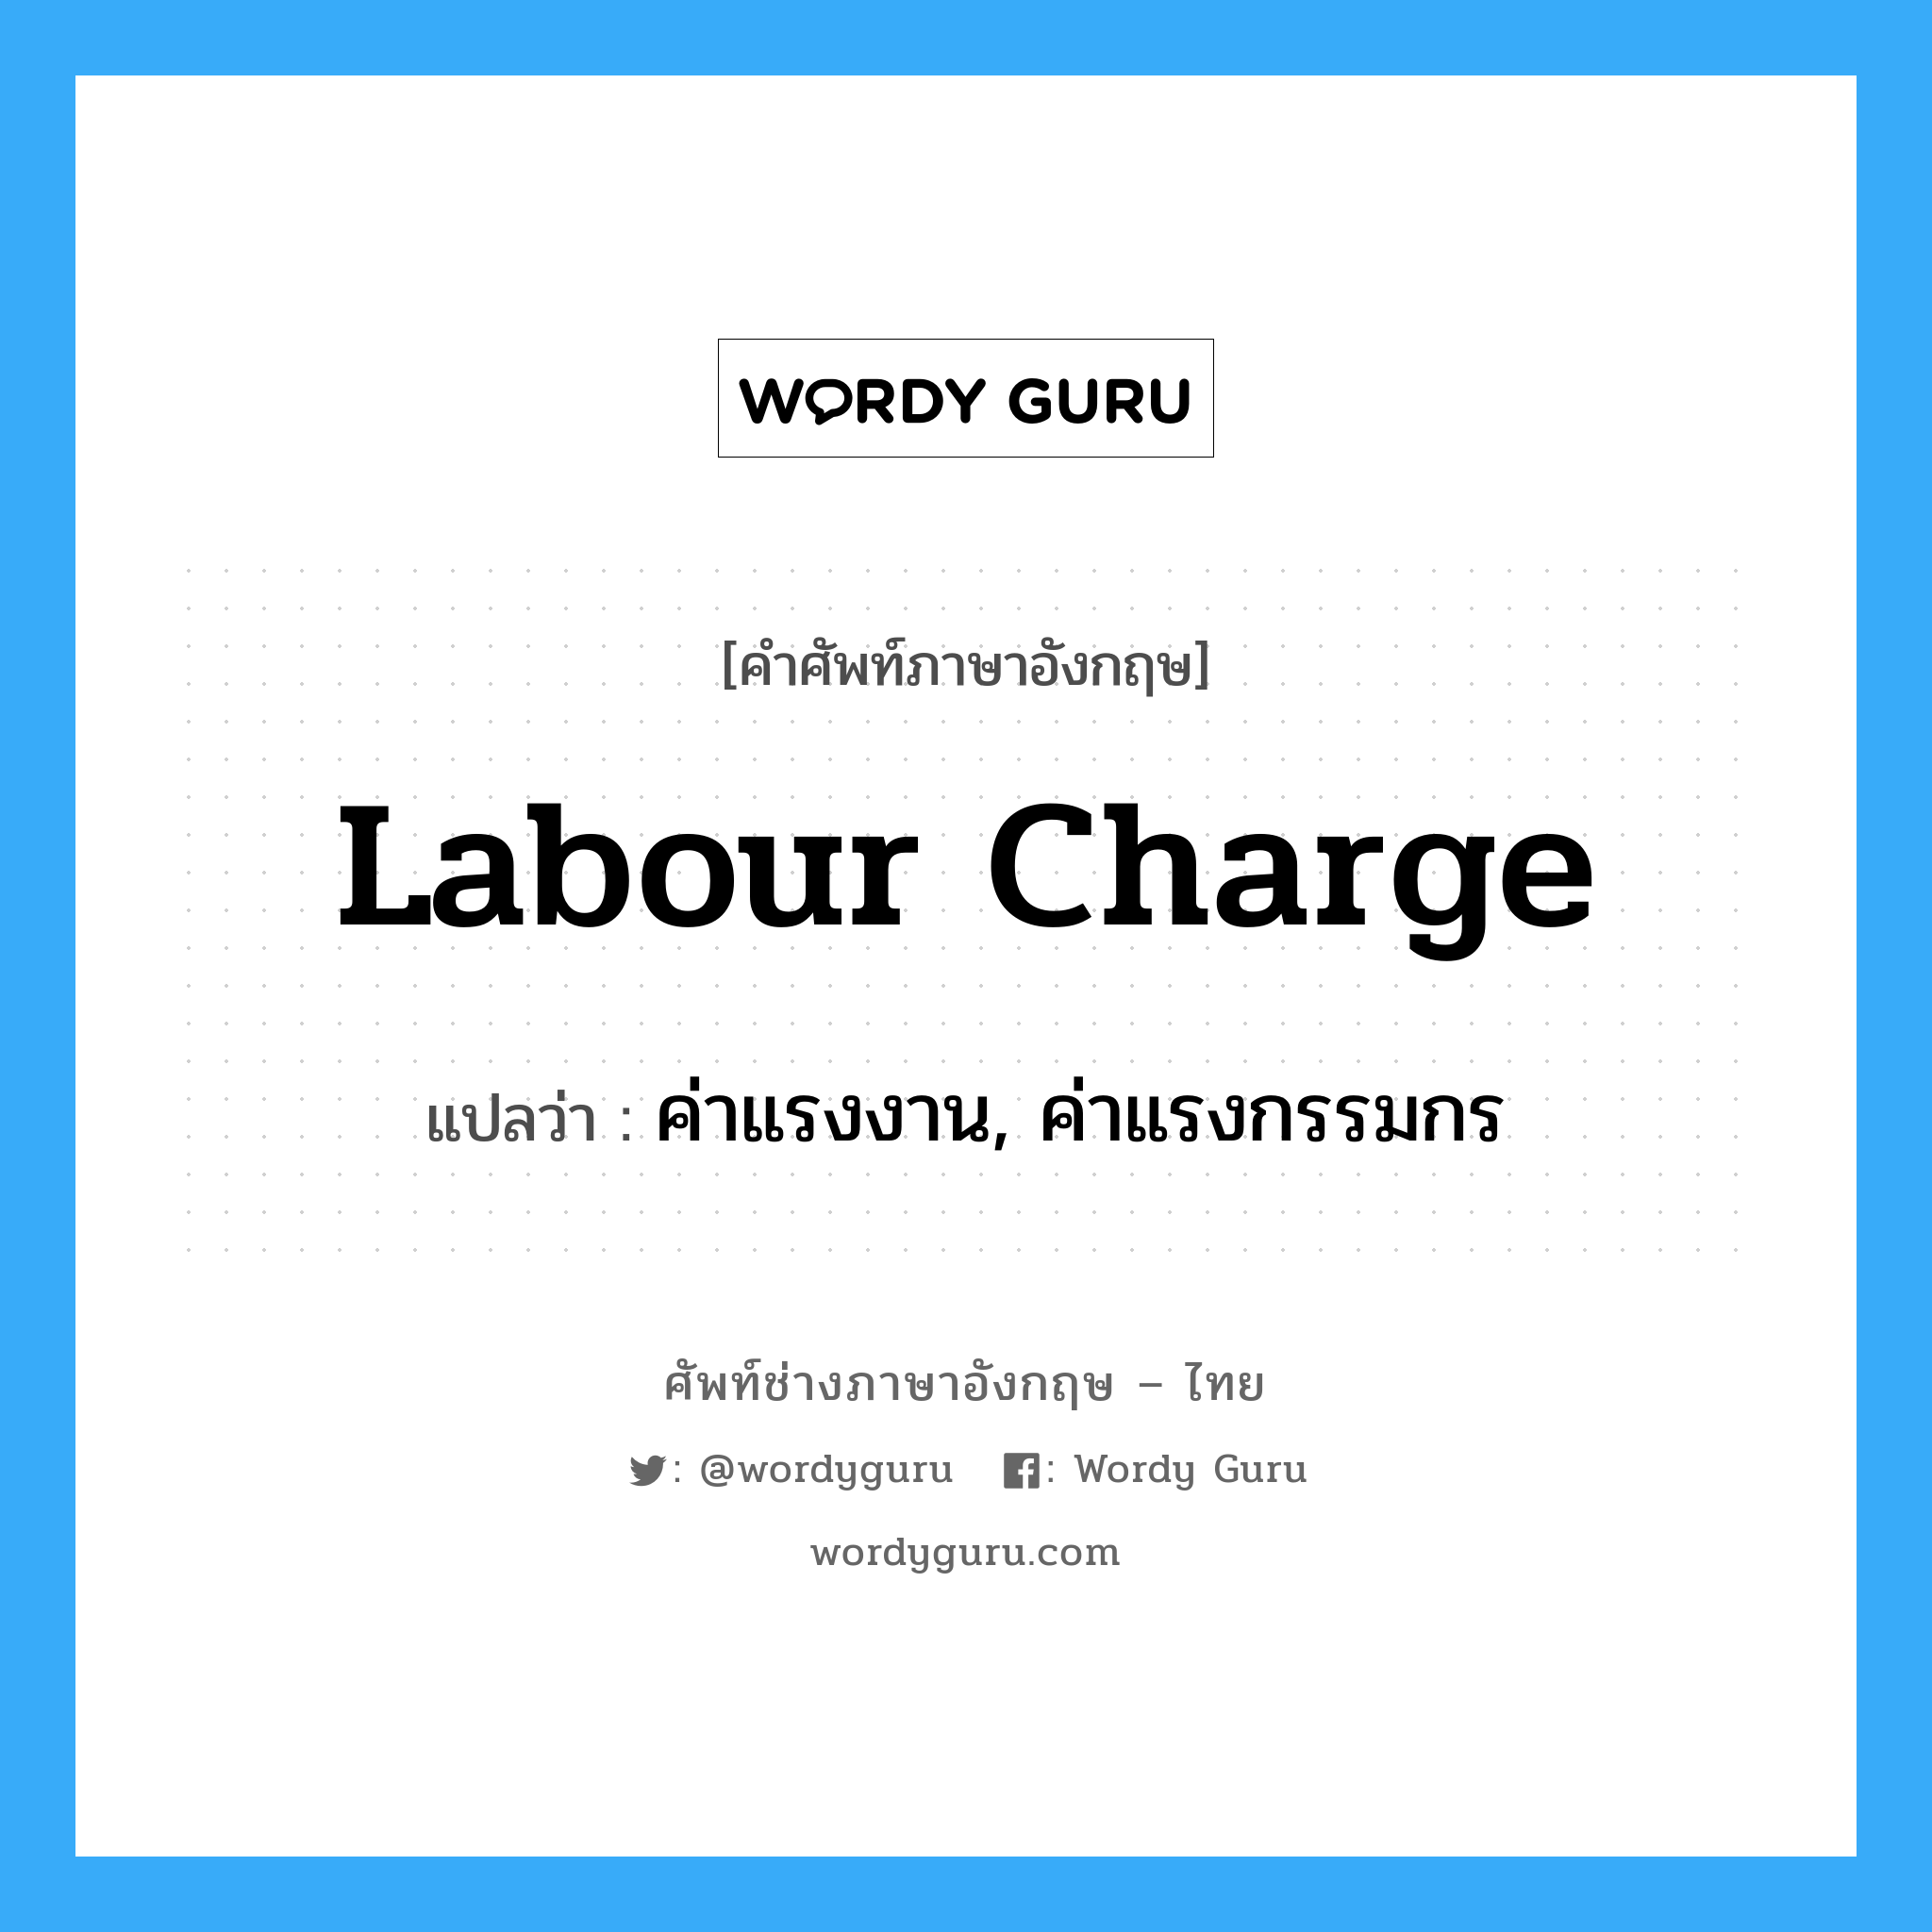 labour charge แปลว่า?, คำศัพท์ช่างภาษาอังกฤษ - ไทย labour charge คำศัพท์ภาษาอังกฤษ labour charge แปลว่า ค่าแรงงาน, ค่าแรงกรรมกร